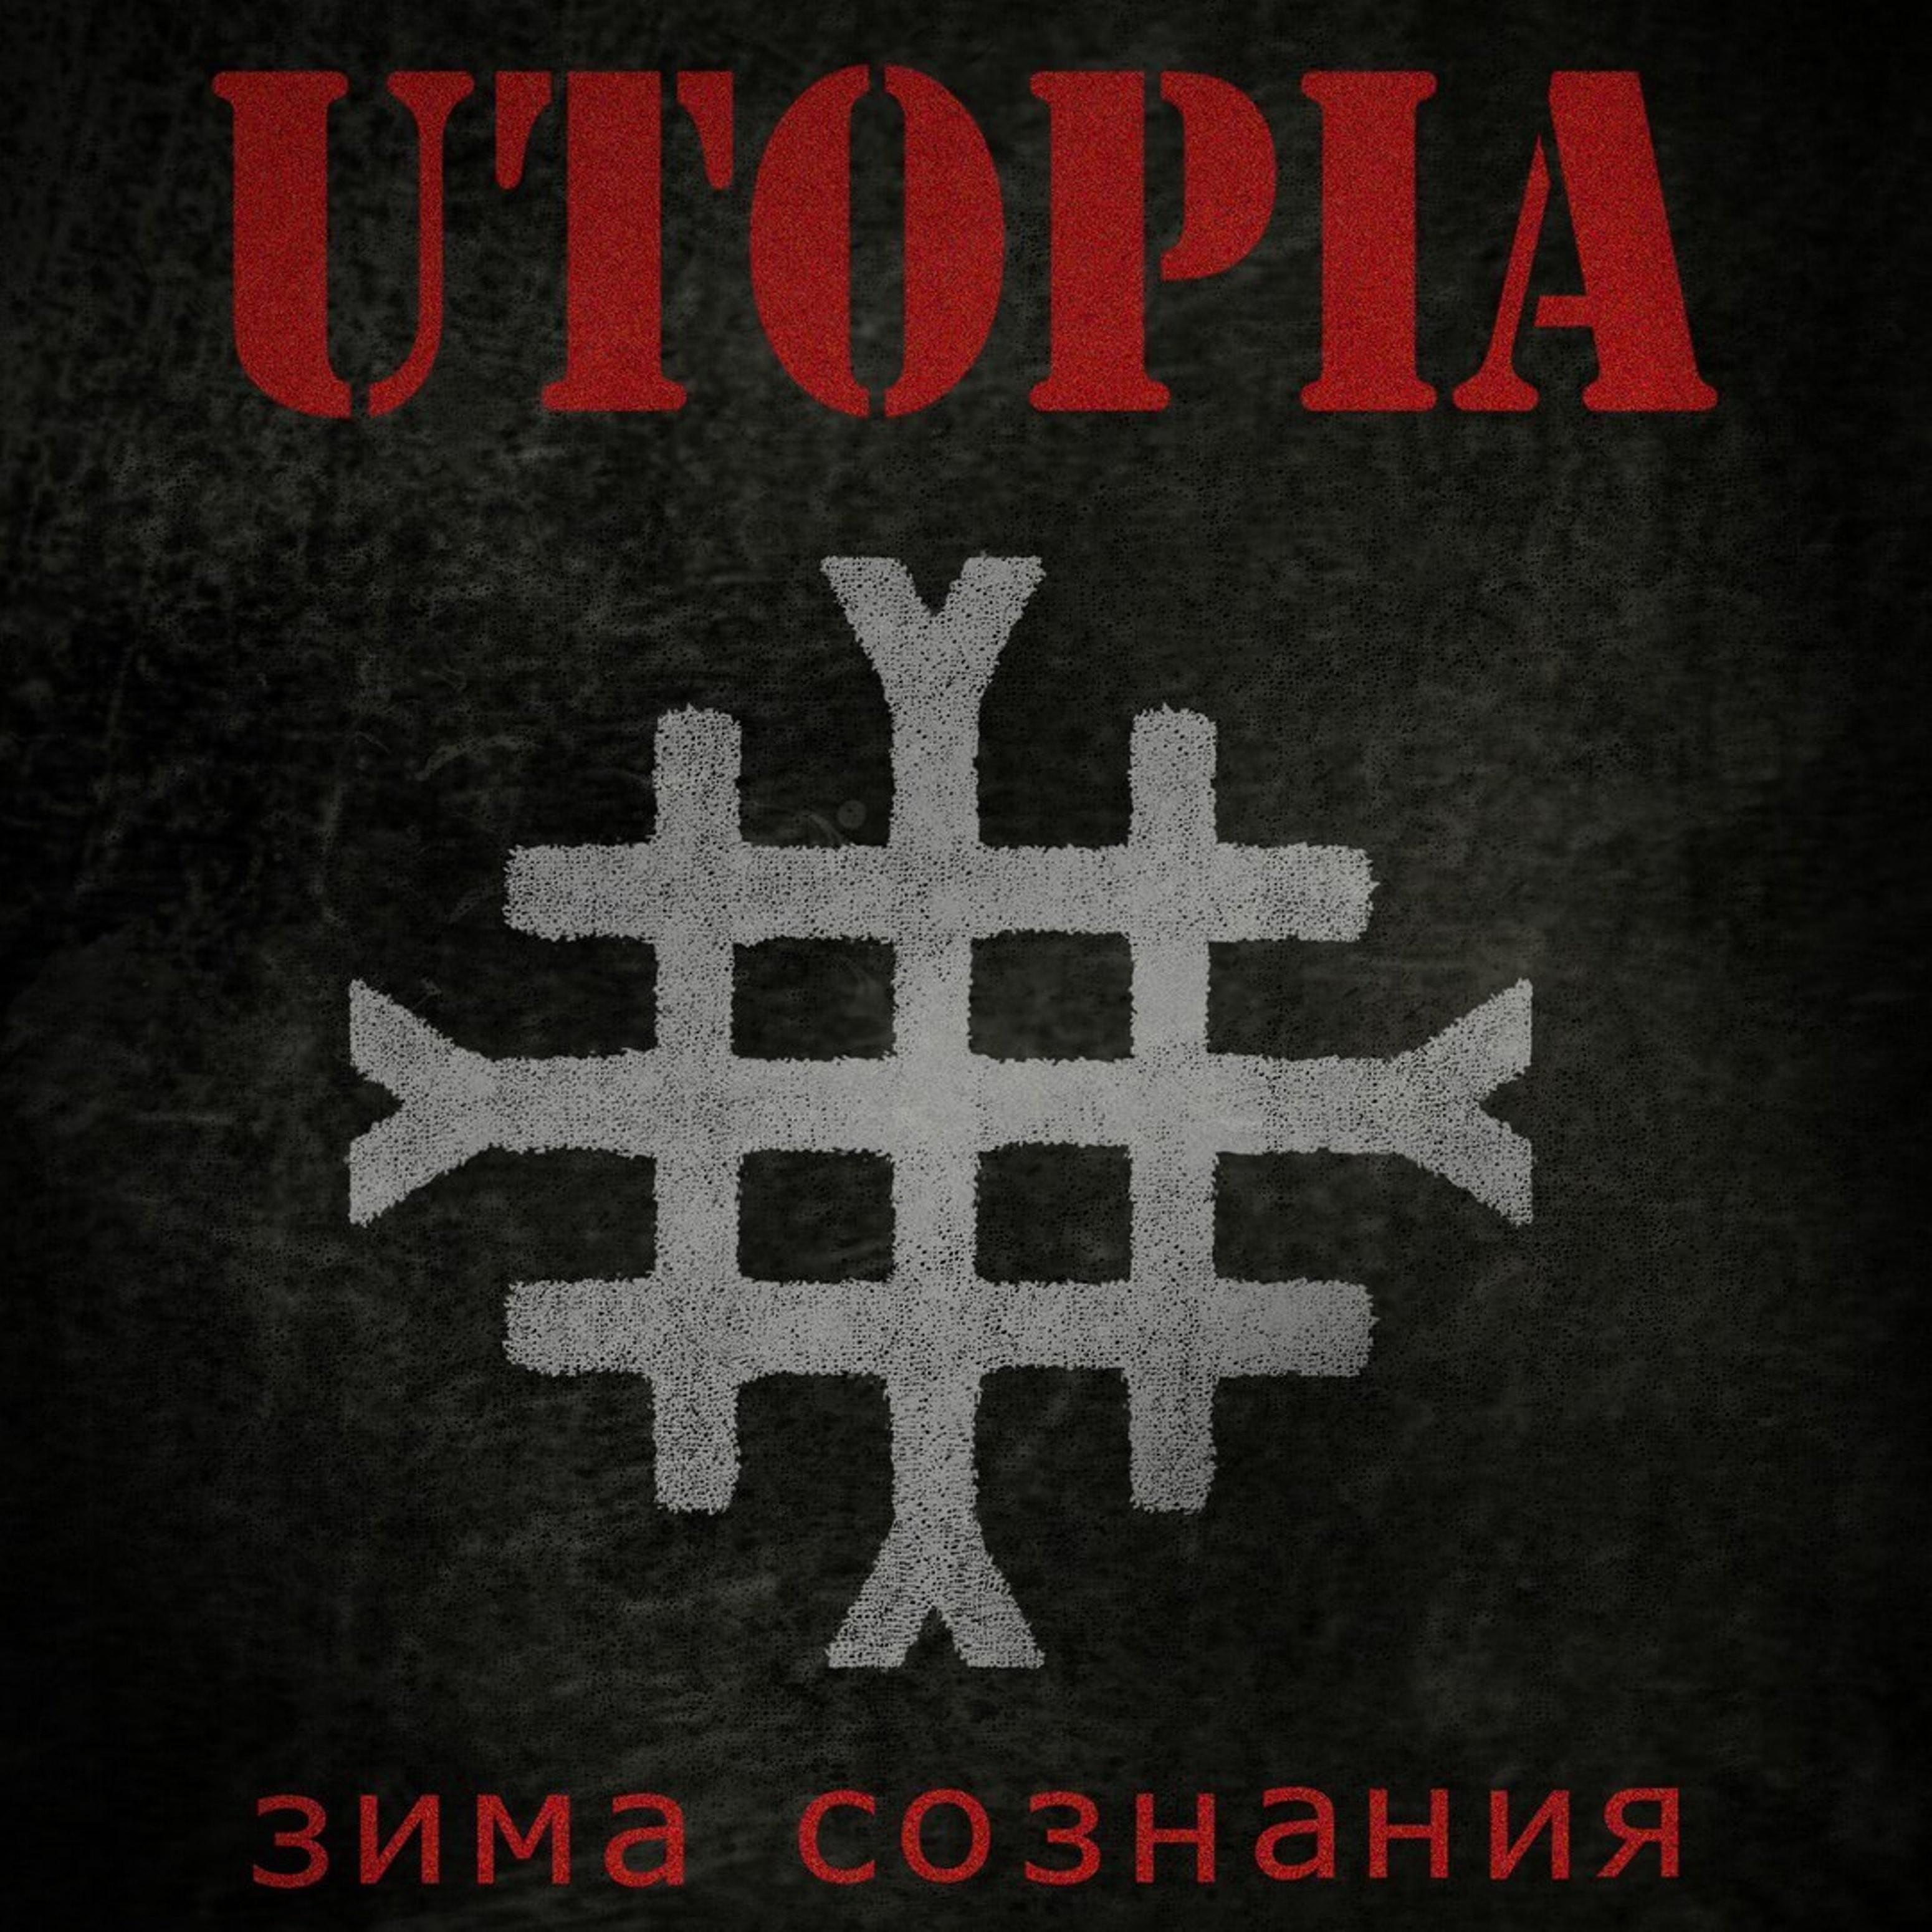 Utopia - Разъеби систему!